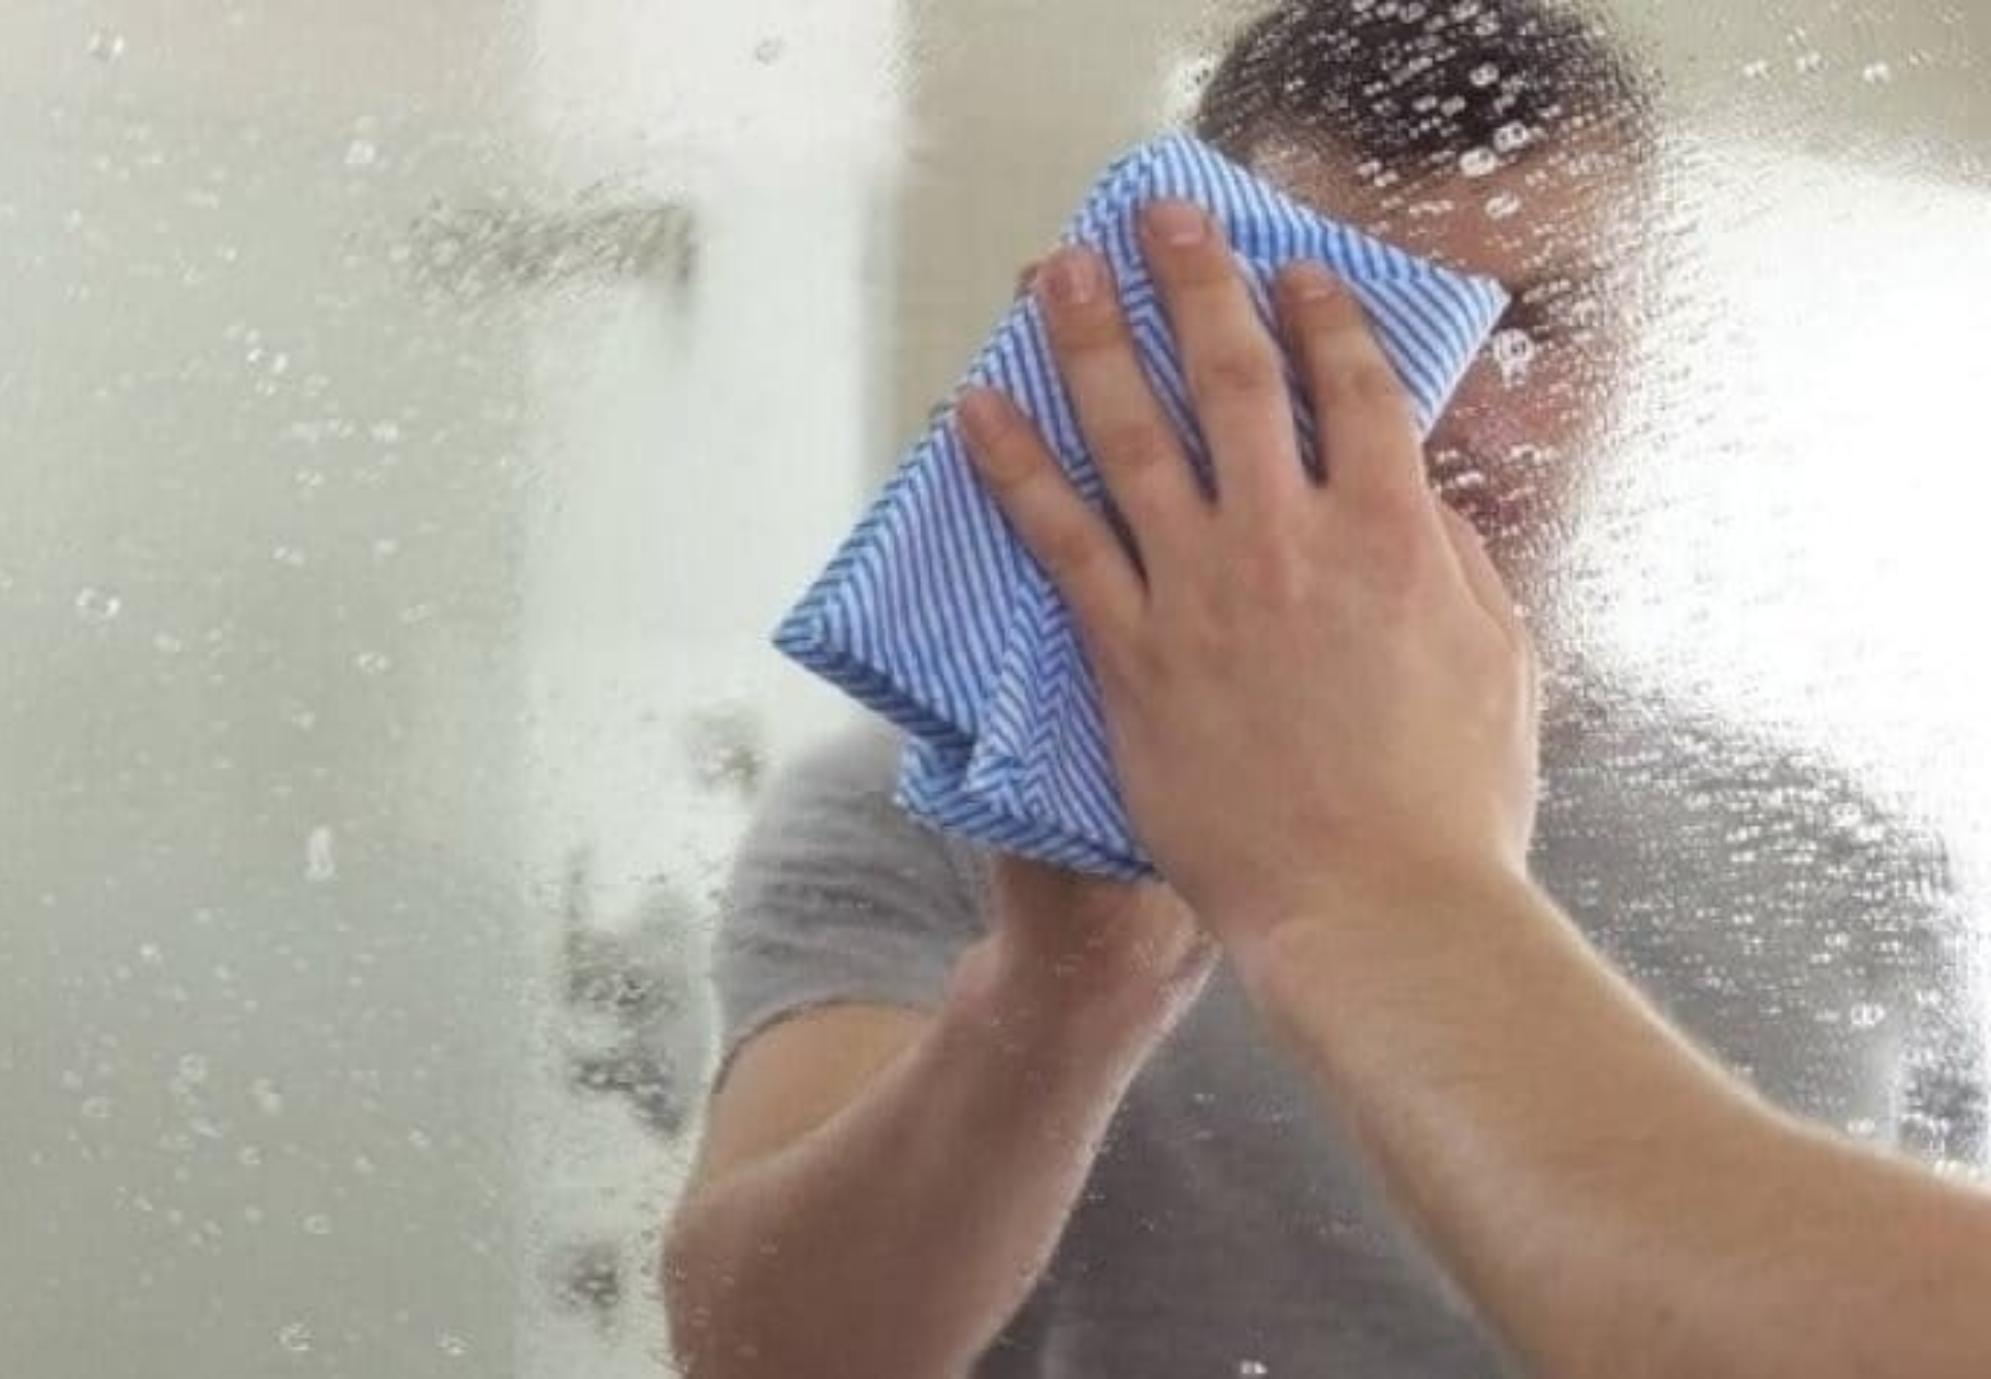 Στίγματα θαμπάδα και σκόνη στους καθρέφτες: Δείτε τους πιο αποτελεσματικούς τρόπους για να τους κάνετε πάλι να αστράφτουν